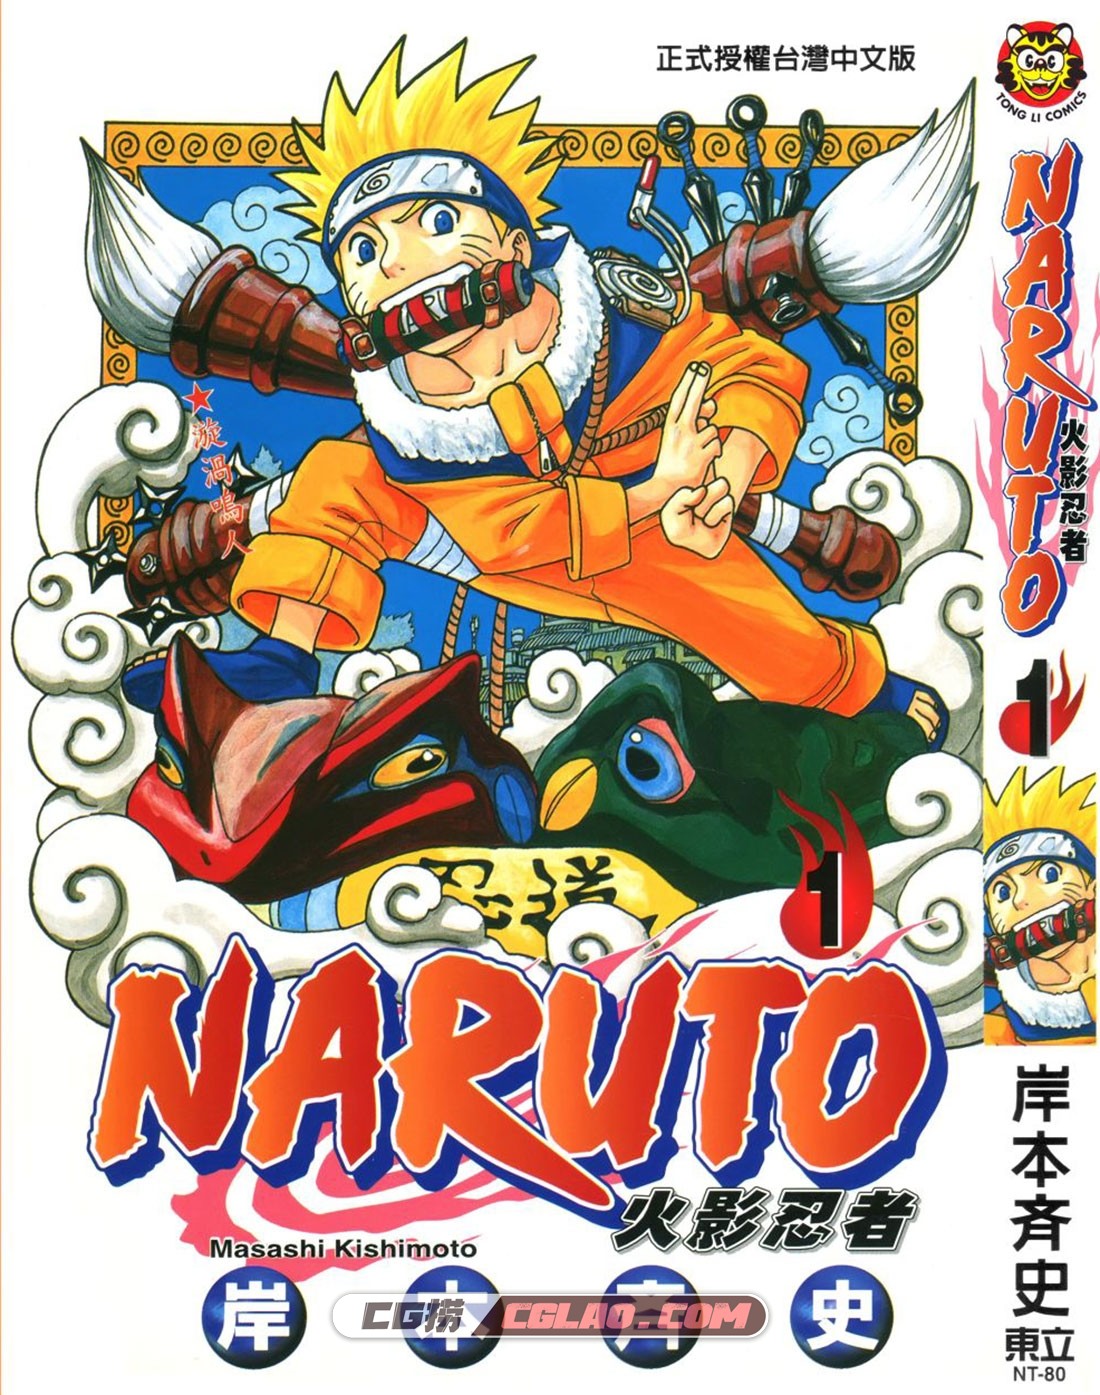 火影忍者 NARUTO 全集各种版本 日本经典少年漫画网盘下载,001.jpg